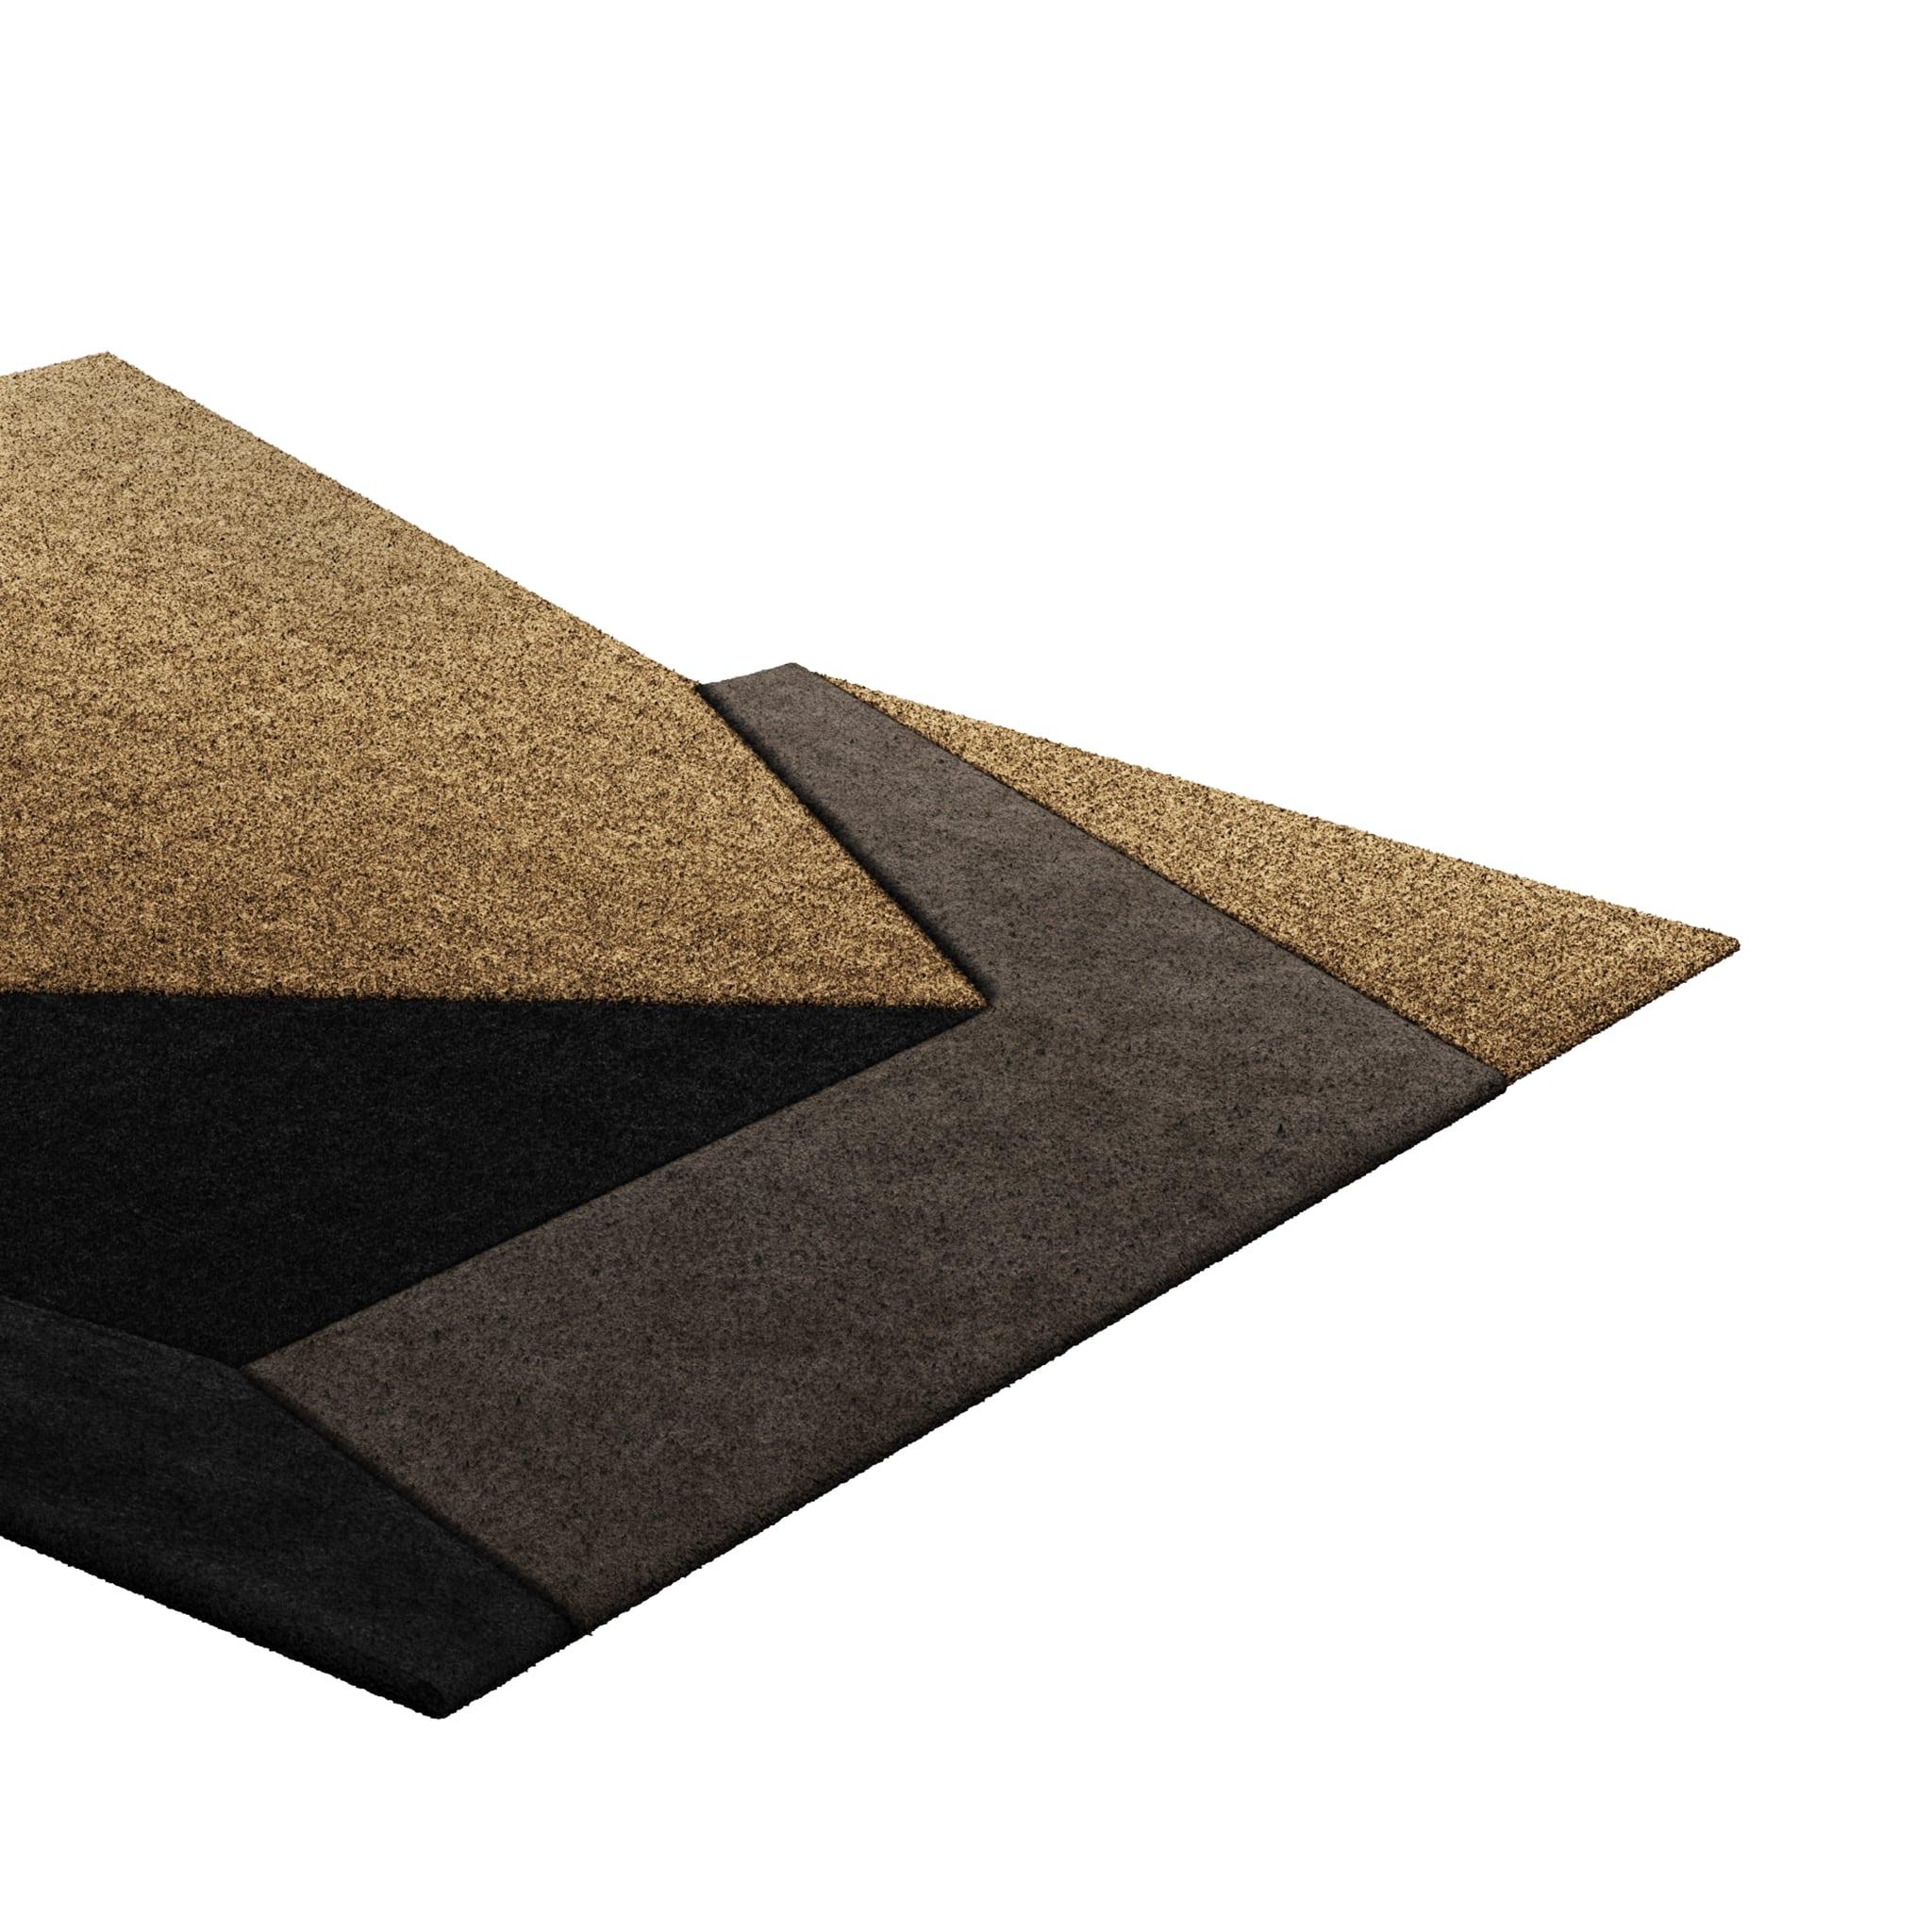 Tapis Retro #006 ist ein Retro-Teppich mit einer unregelmäßigen Form und neutralen Farben. Inspiriert von architektonischen Linien, setzt dieser geometrische Teppich in jedem Wohnbereich ein Zeichen. 

Mit einer 3D-Tufting-Technik, die Schnitt- und